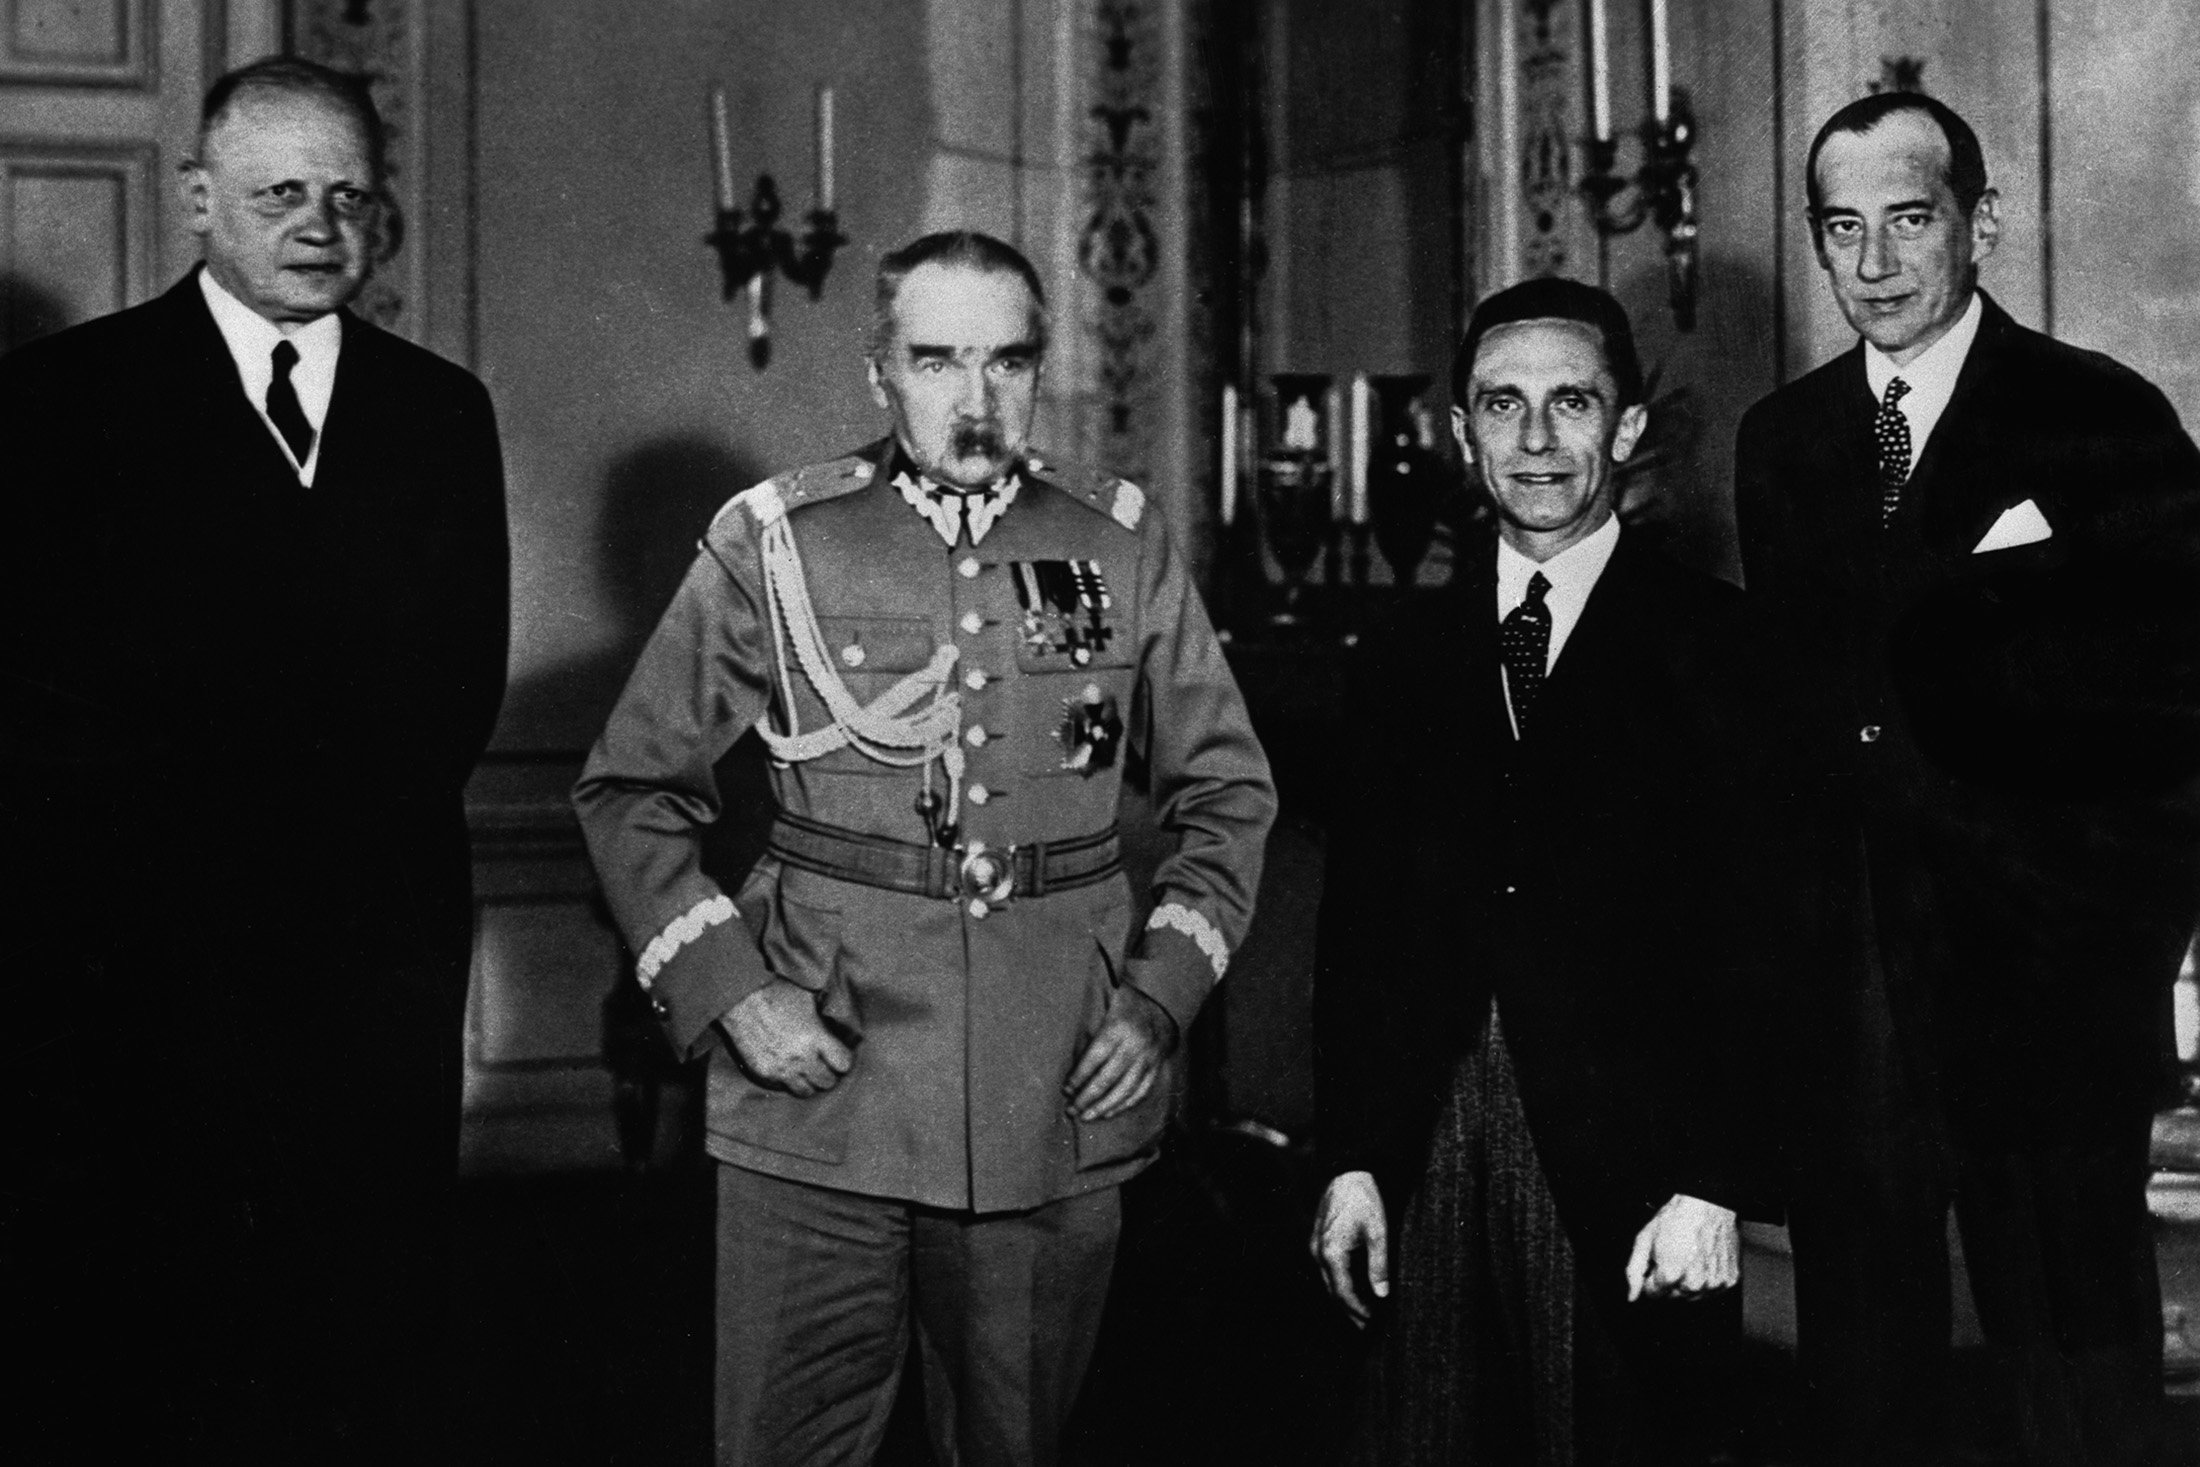 Слева направо: немецкий посол в Польше Ганс-Адольф фон Мольтке, Пилсудский, Геббельс, министр иностранных дел Польши Юзеф Бек. Варшава. Июнь 1934